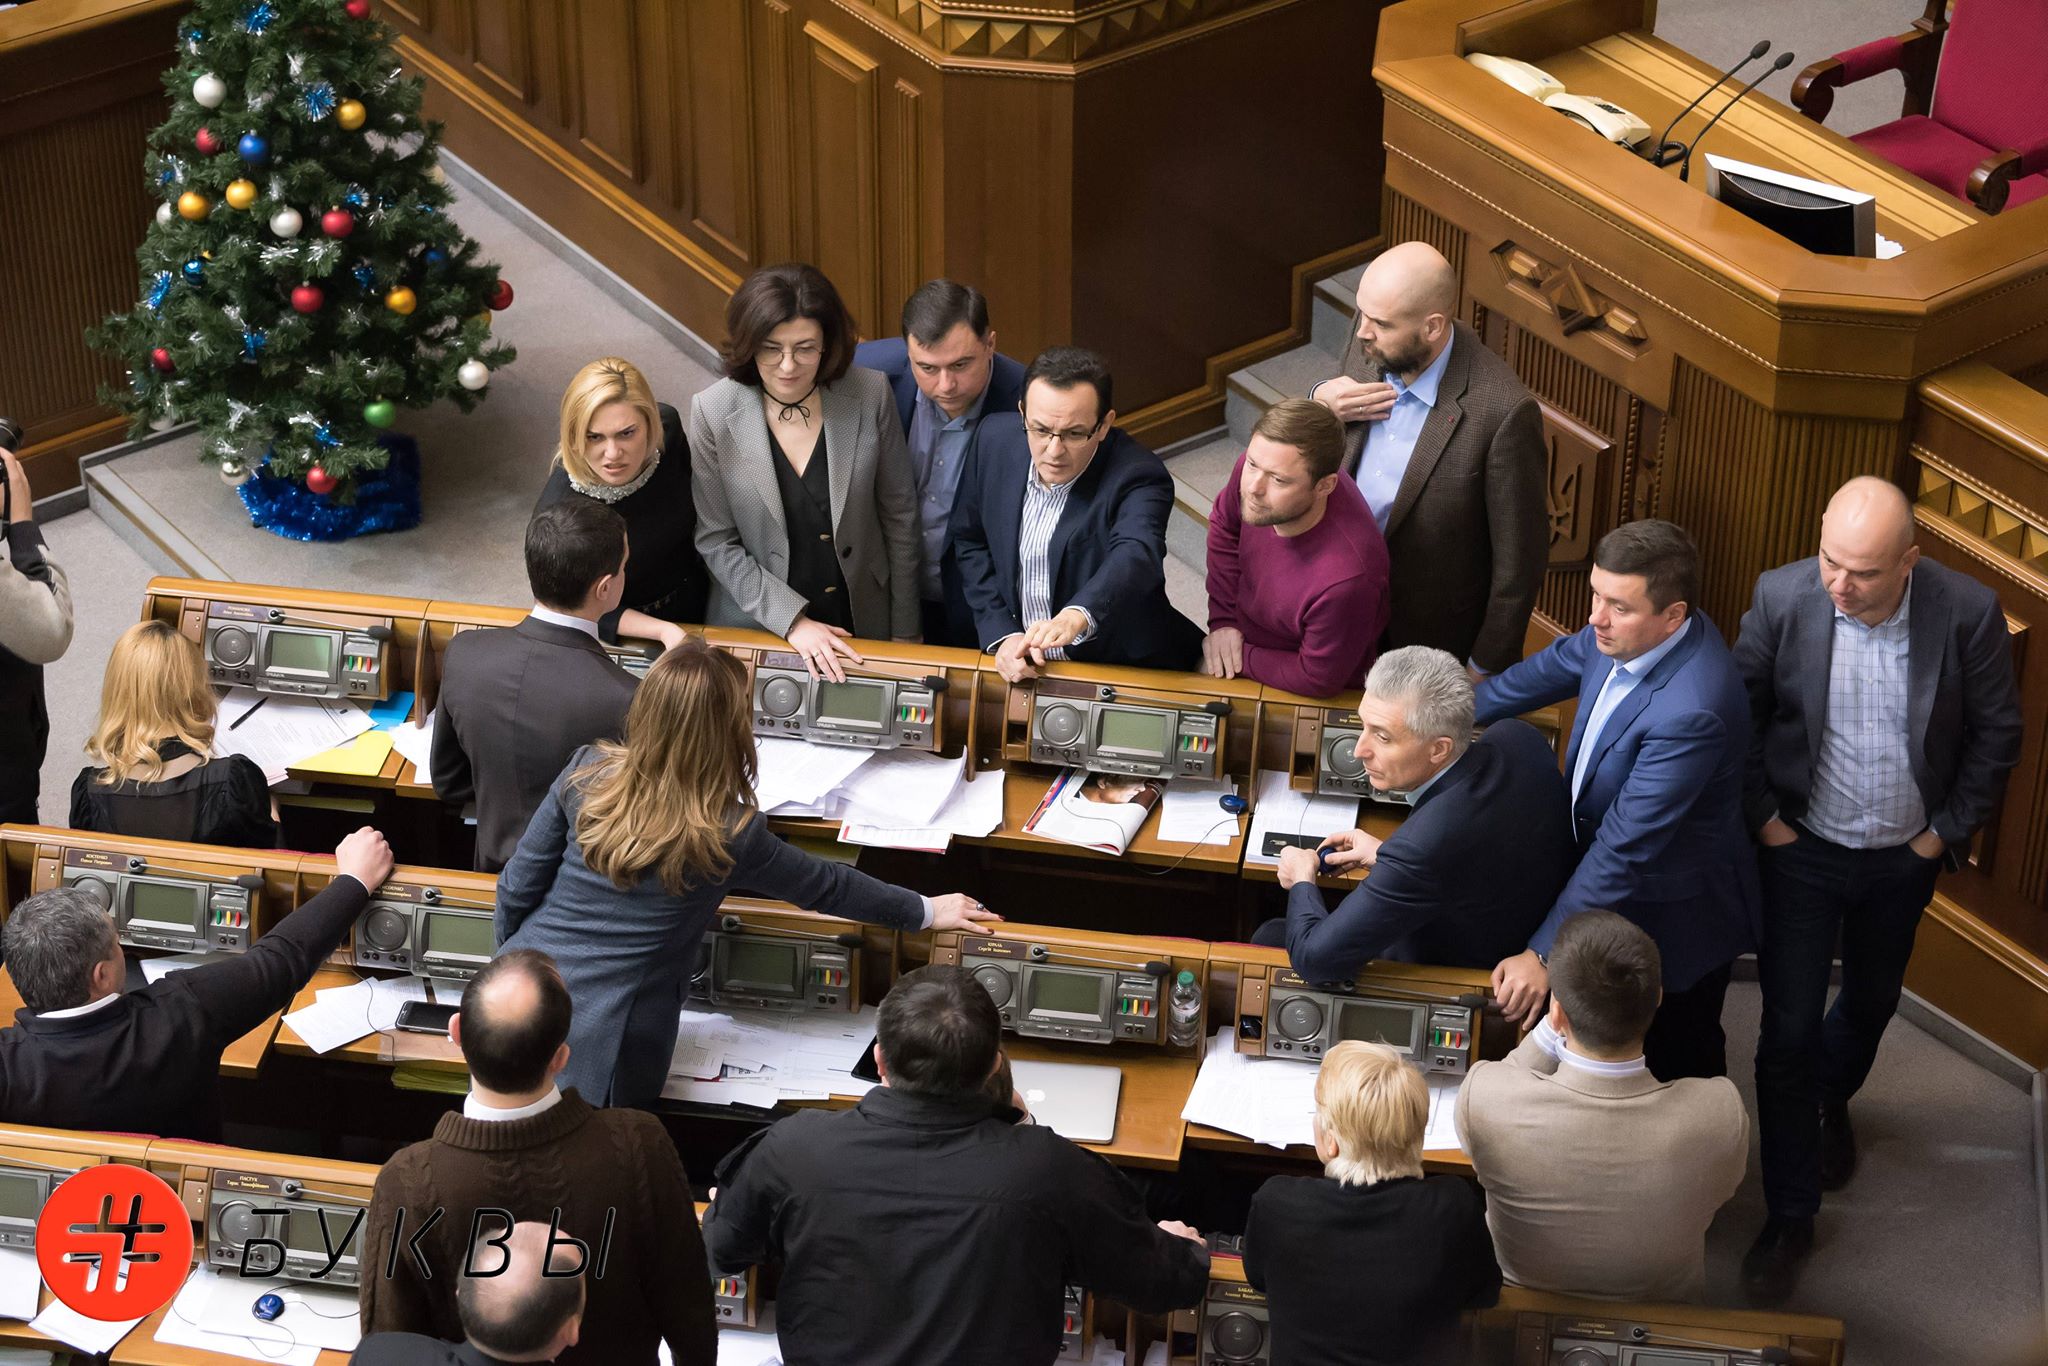 Принятие закона о реинтеграции Донбасса.